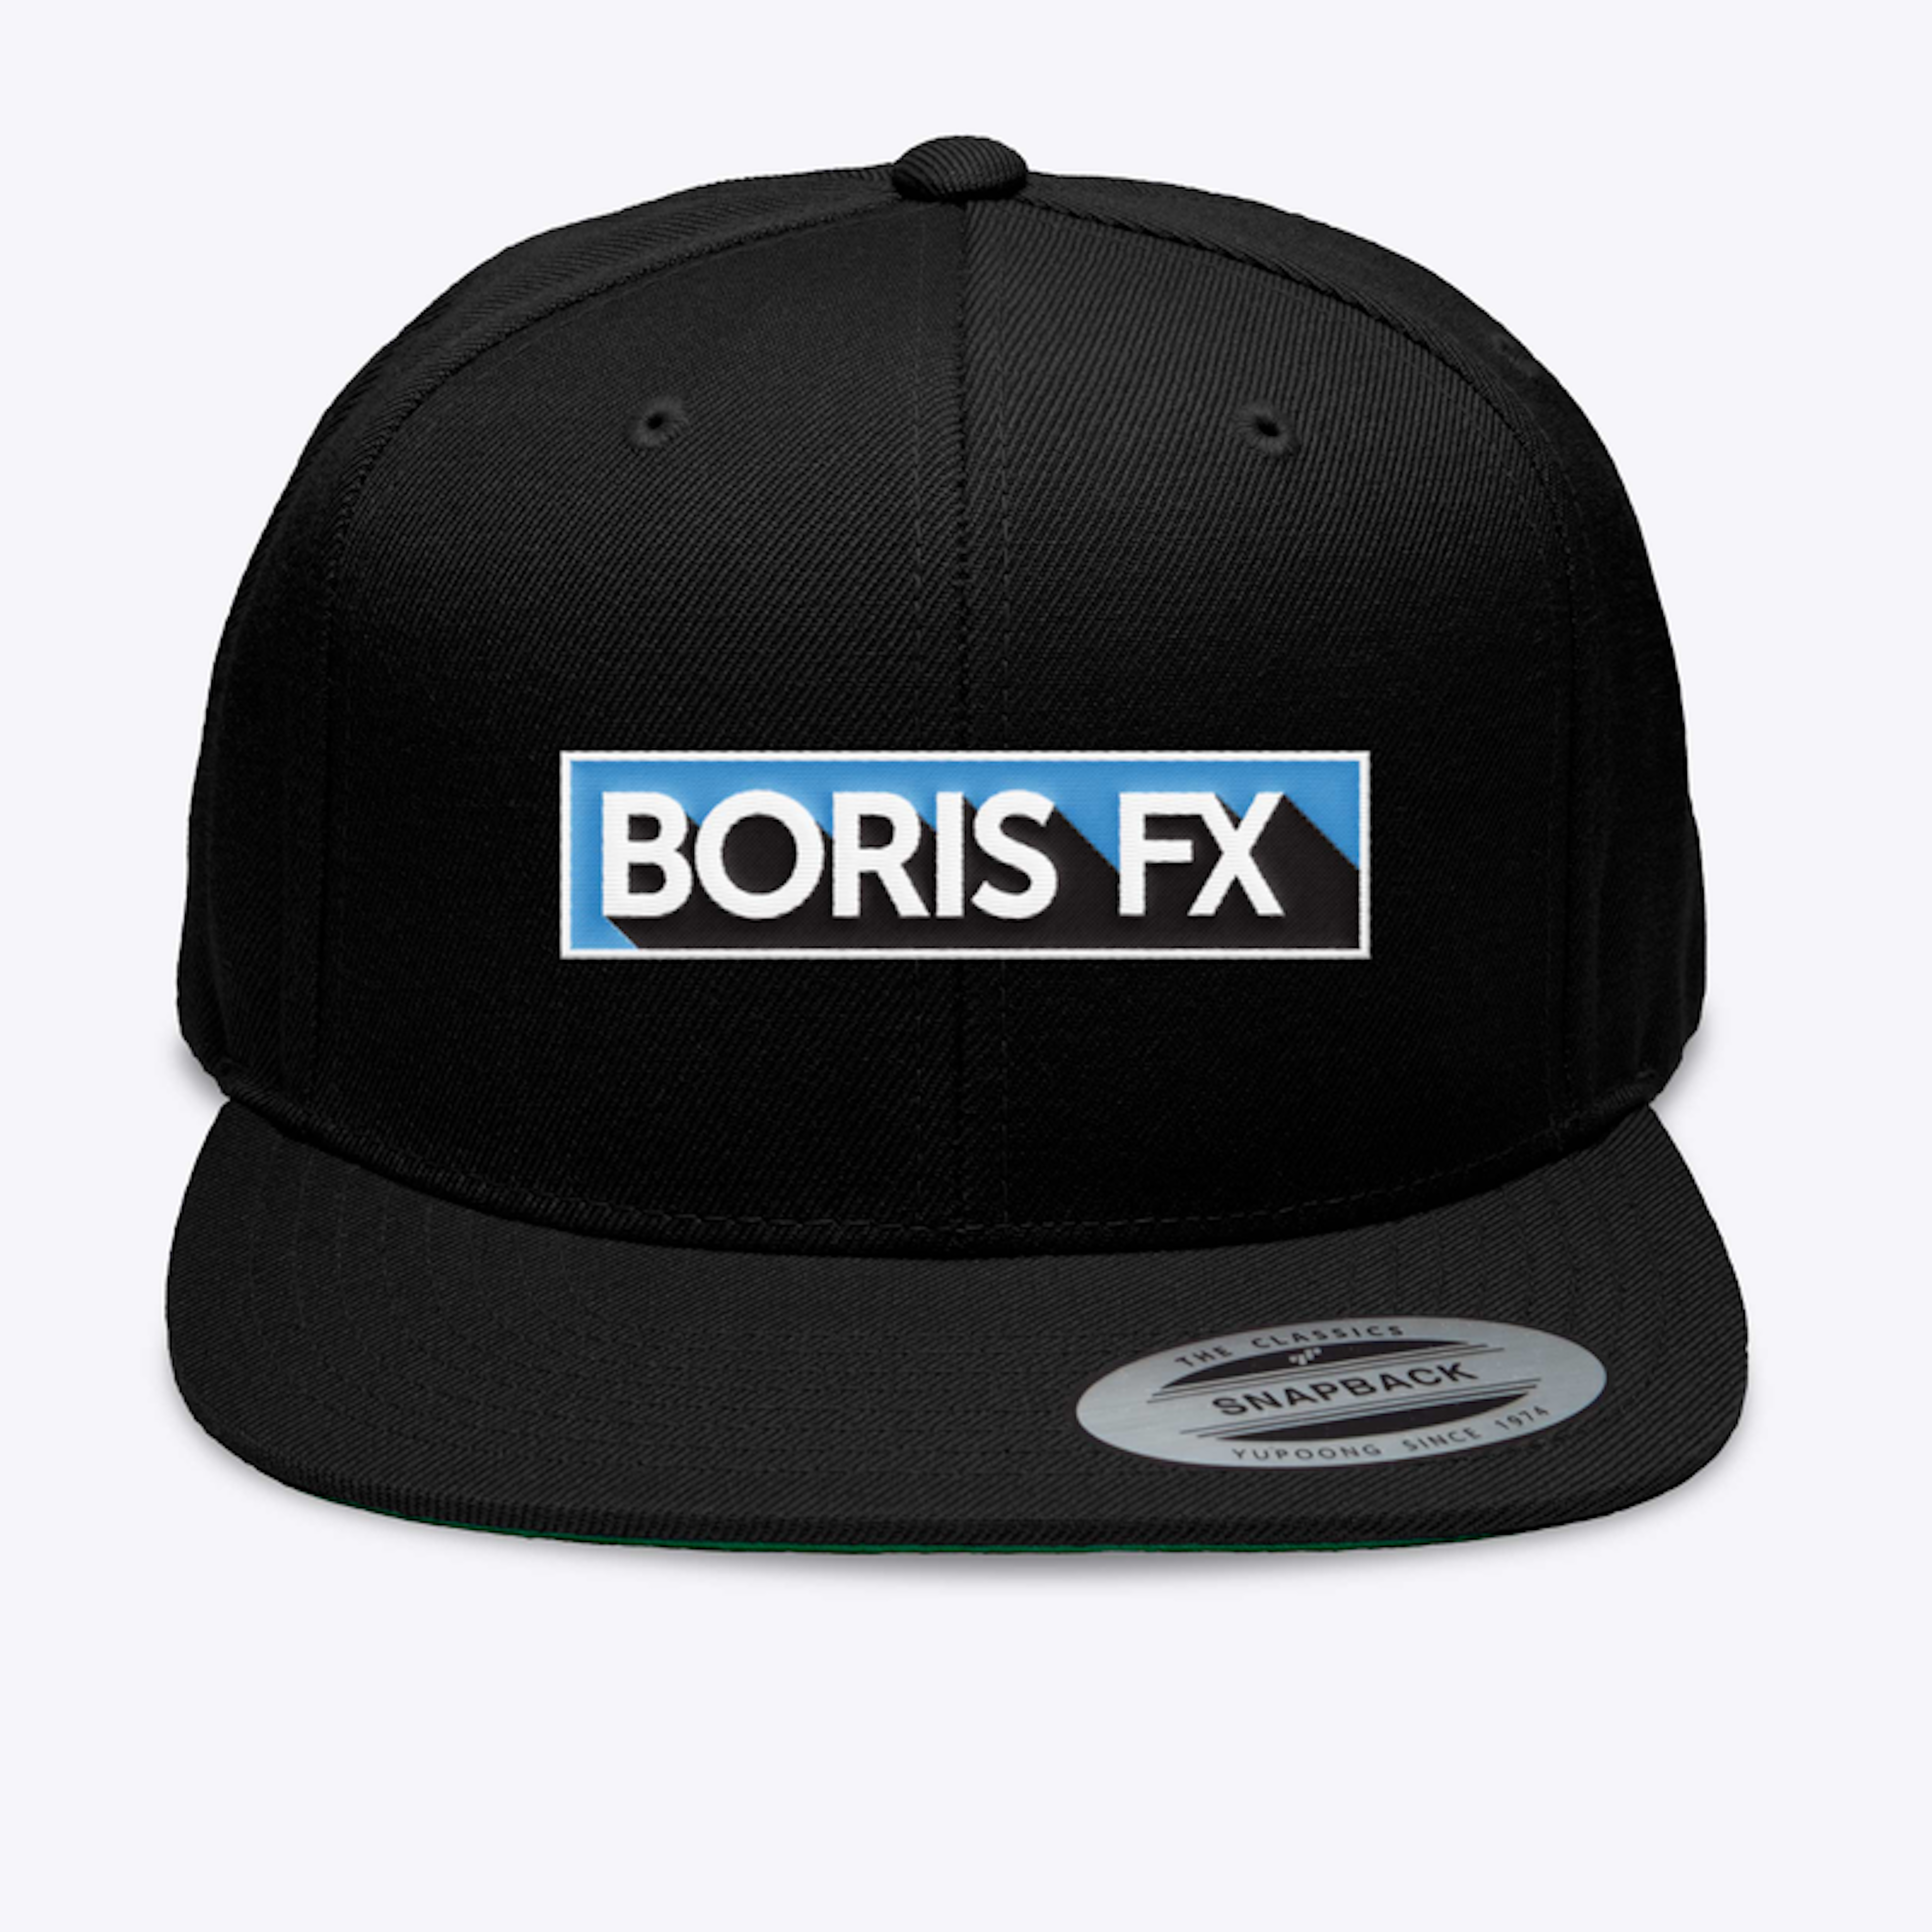 Boris FX Hat